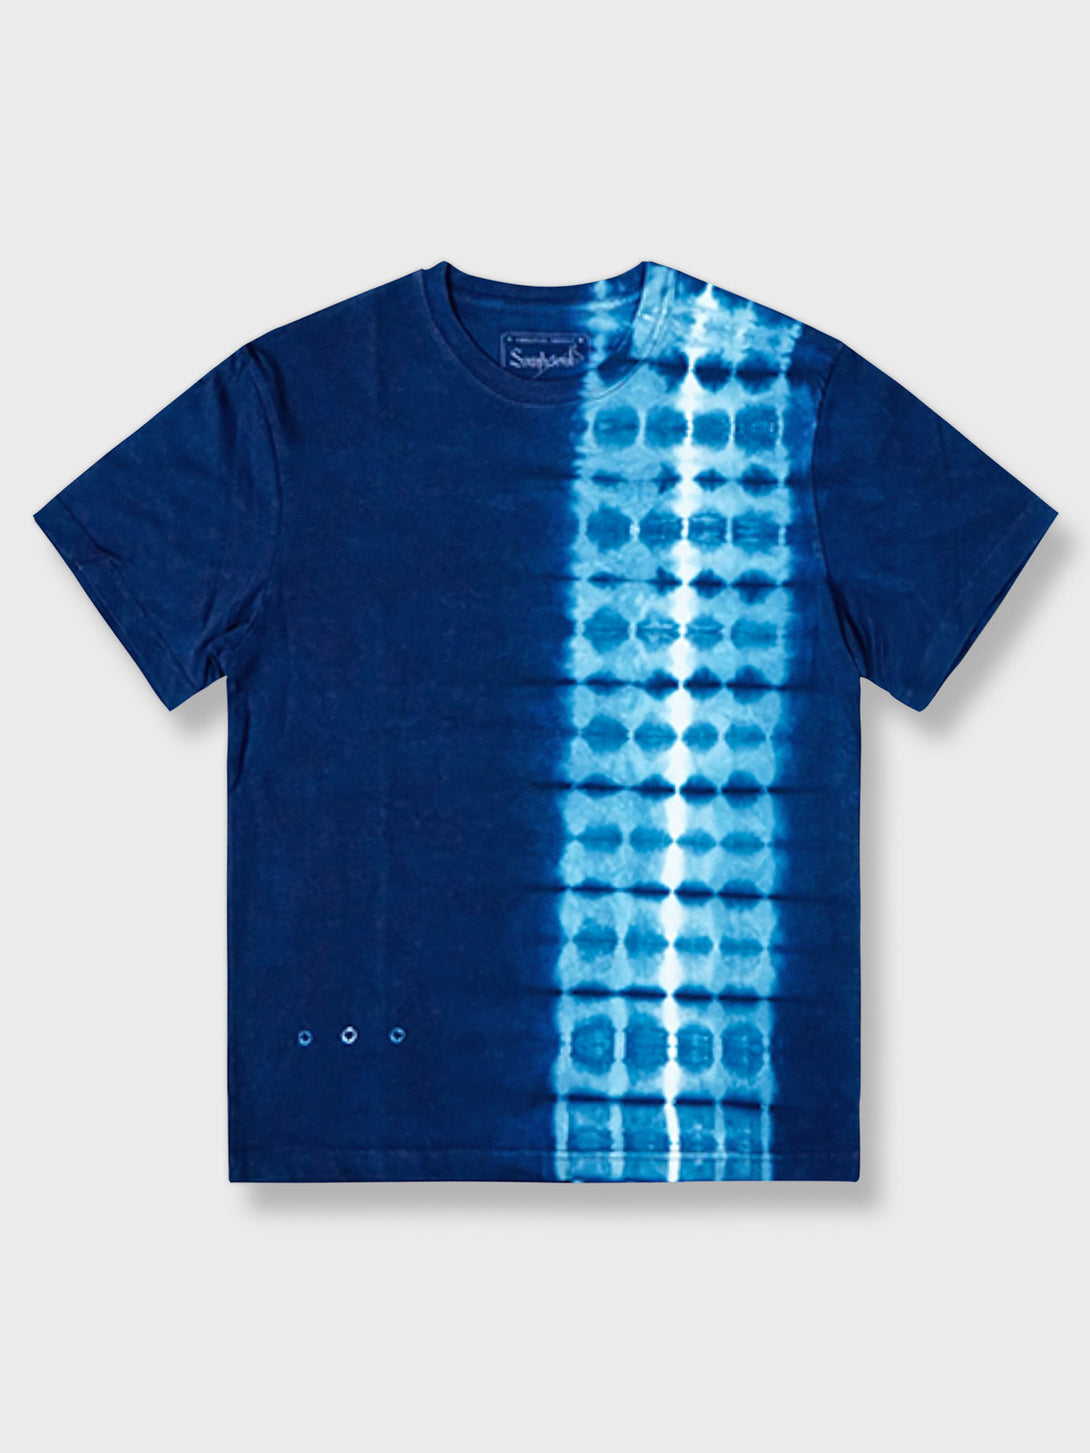 手作り藍染めタイダイ純綿Tシャツ、リラックスフィットで通気性の高い純綿素材、ユニークなタイダイパターン